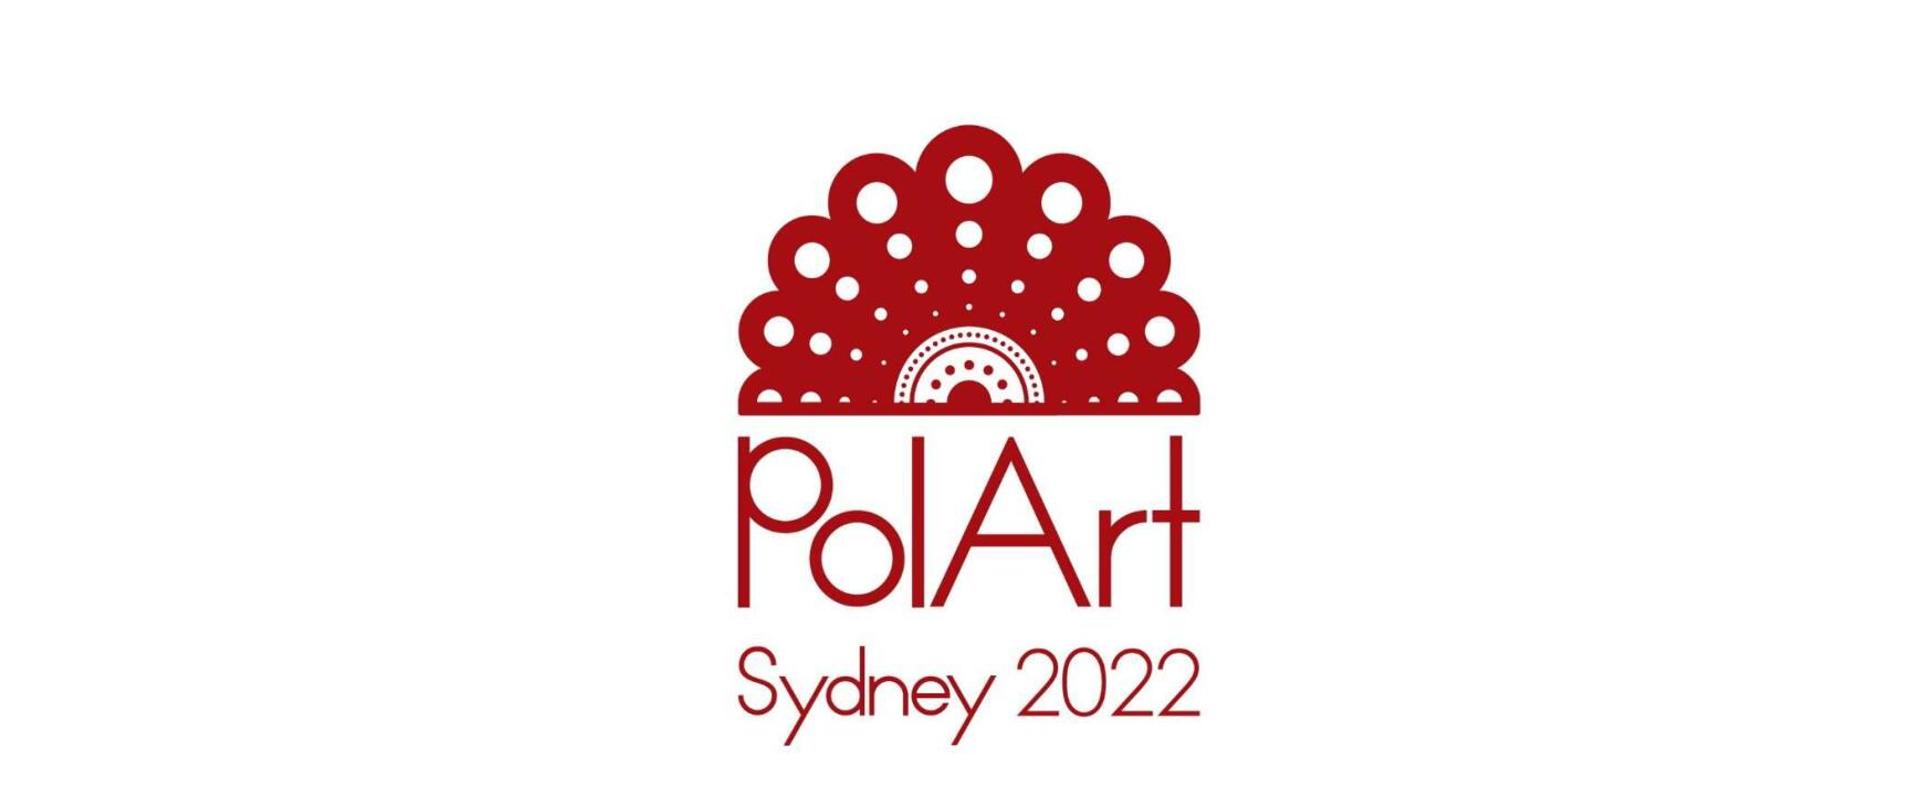 PolArt Sydney 2022